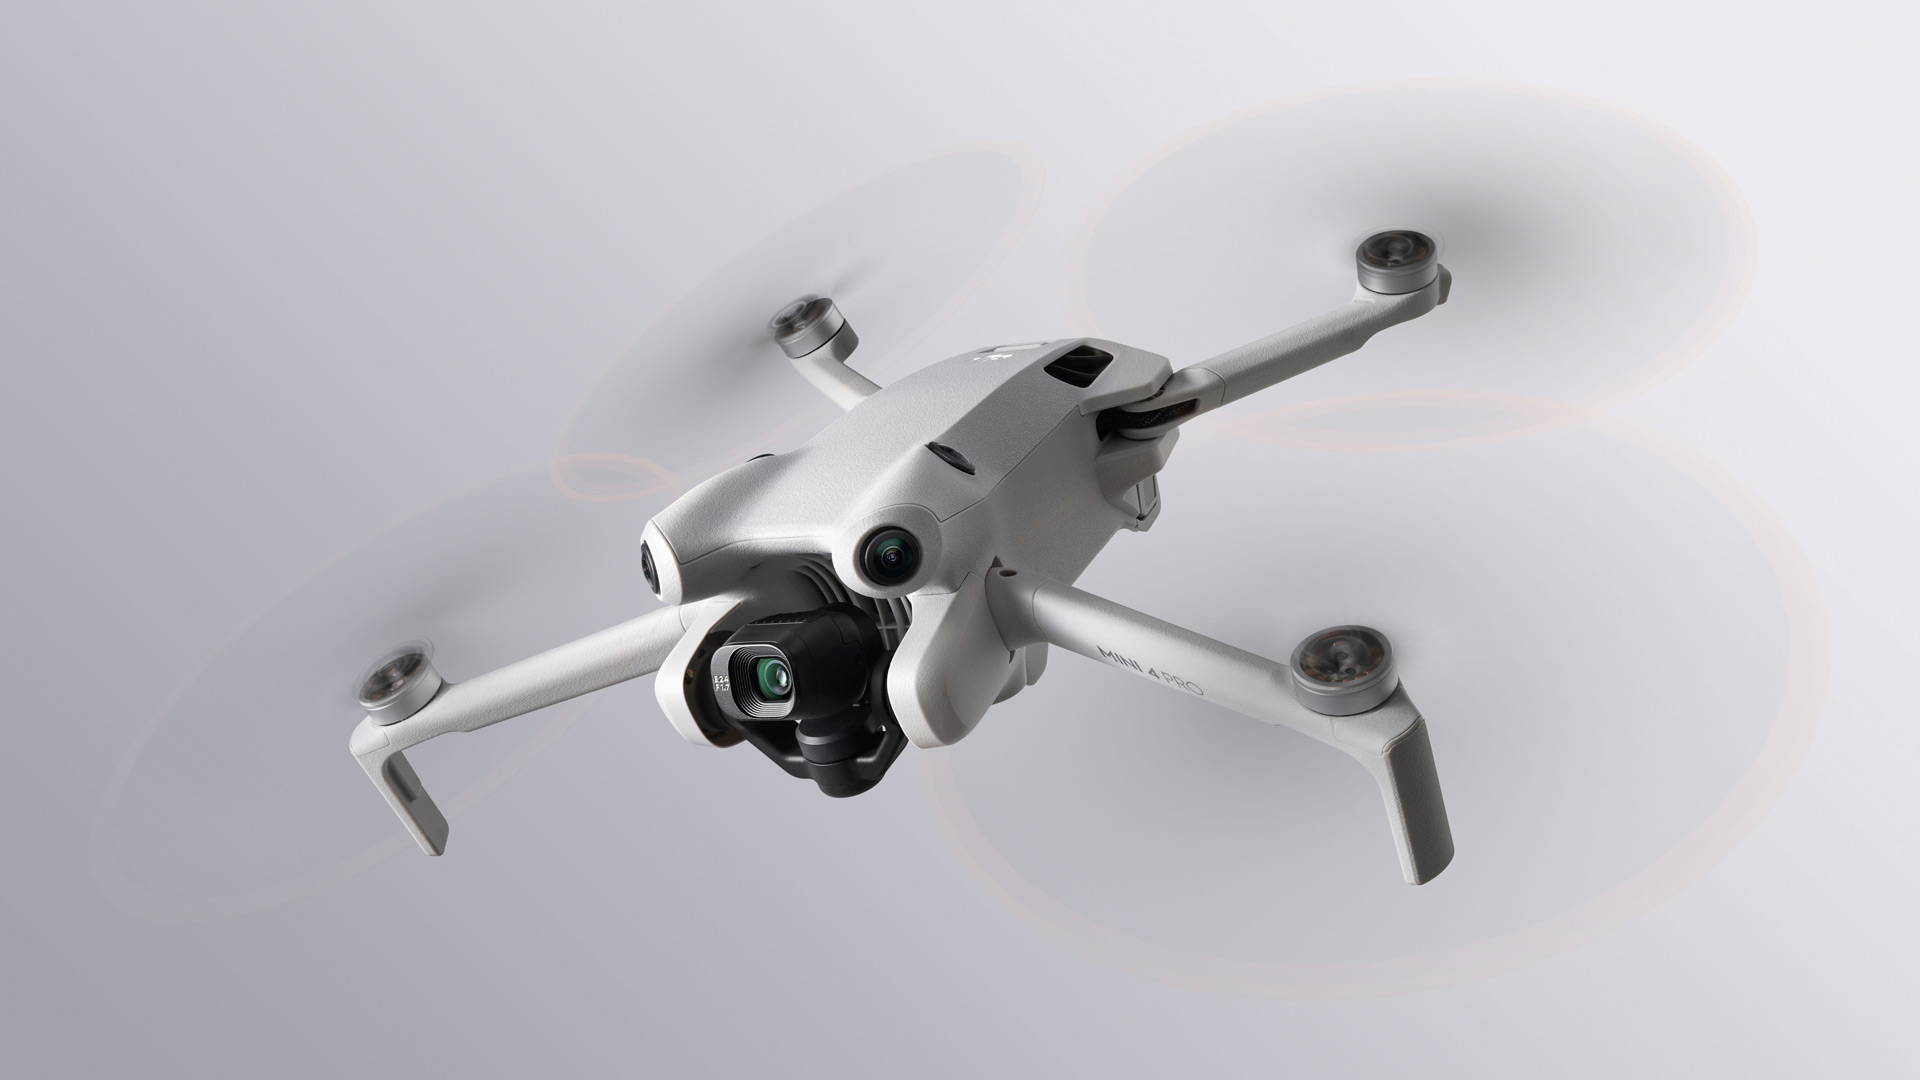 DJI Mini 4 Pro: Finally, The Best Beginner Drone?